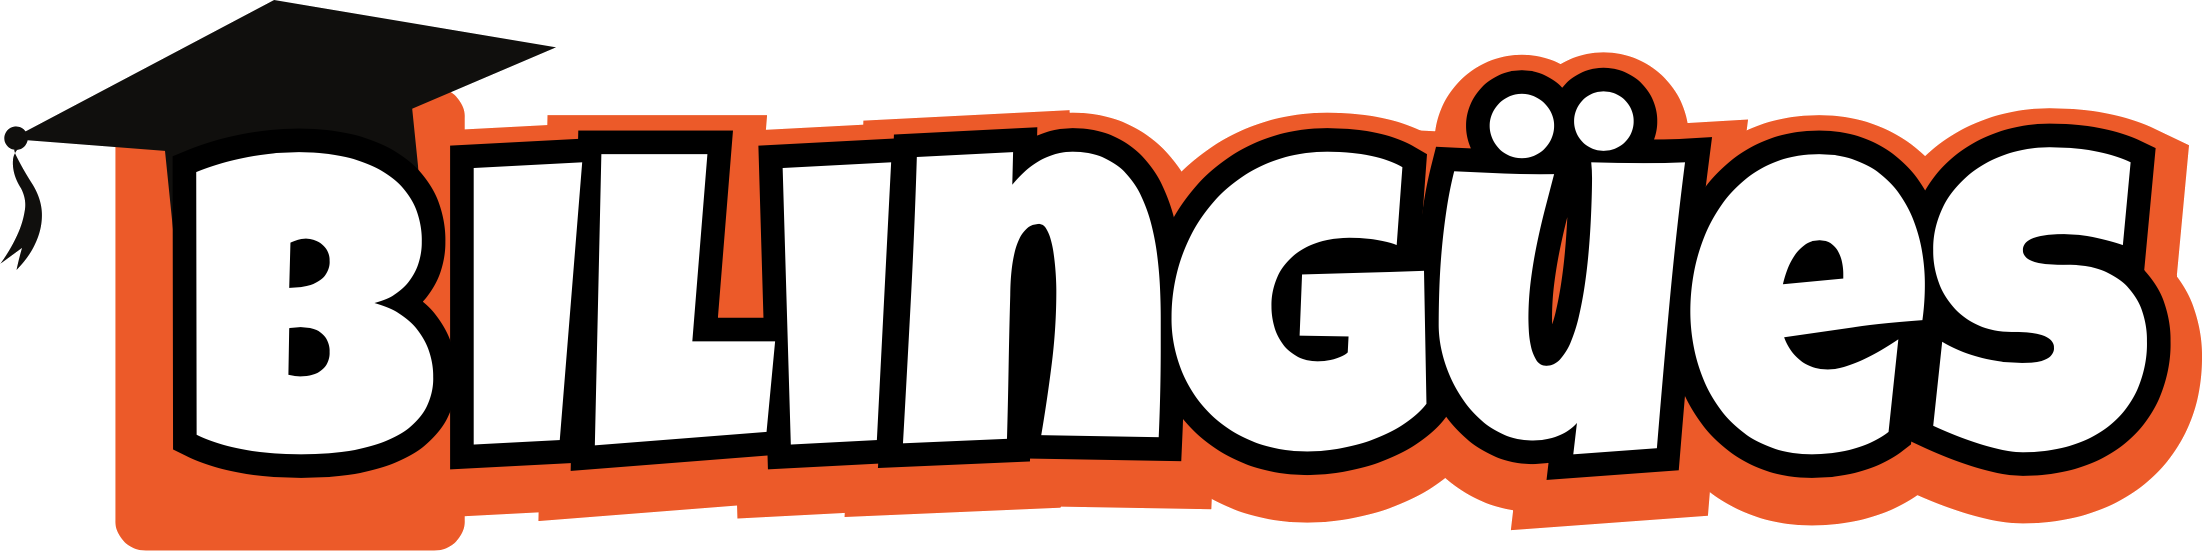 bilingues-logo.png